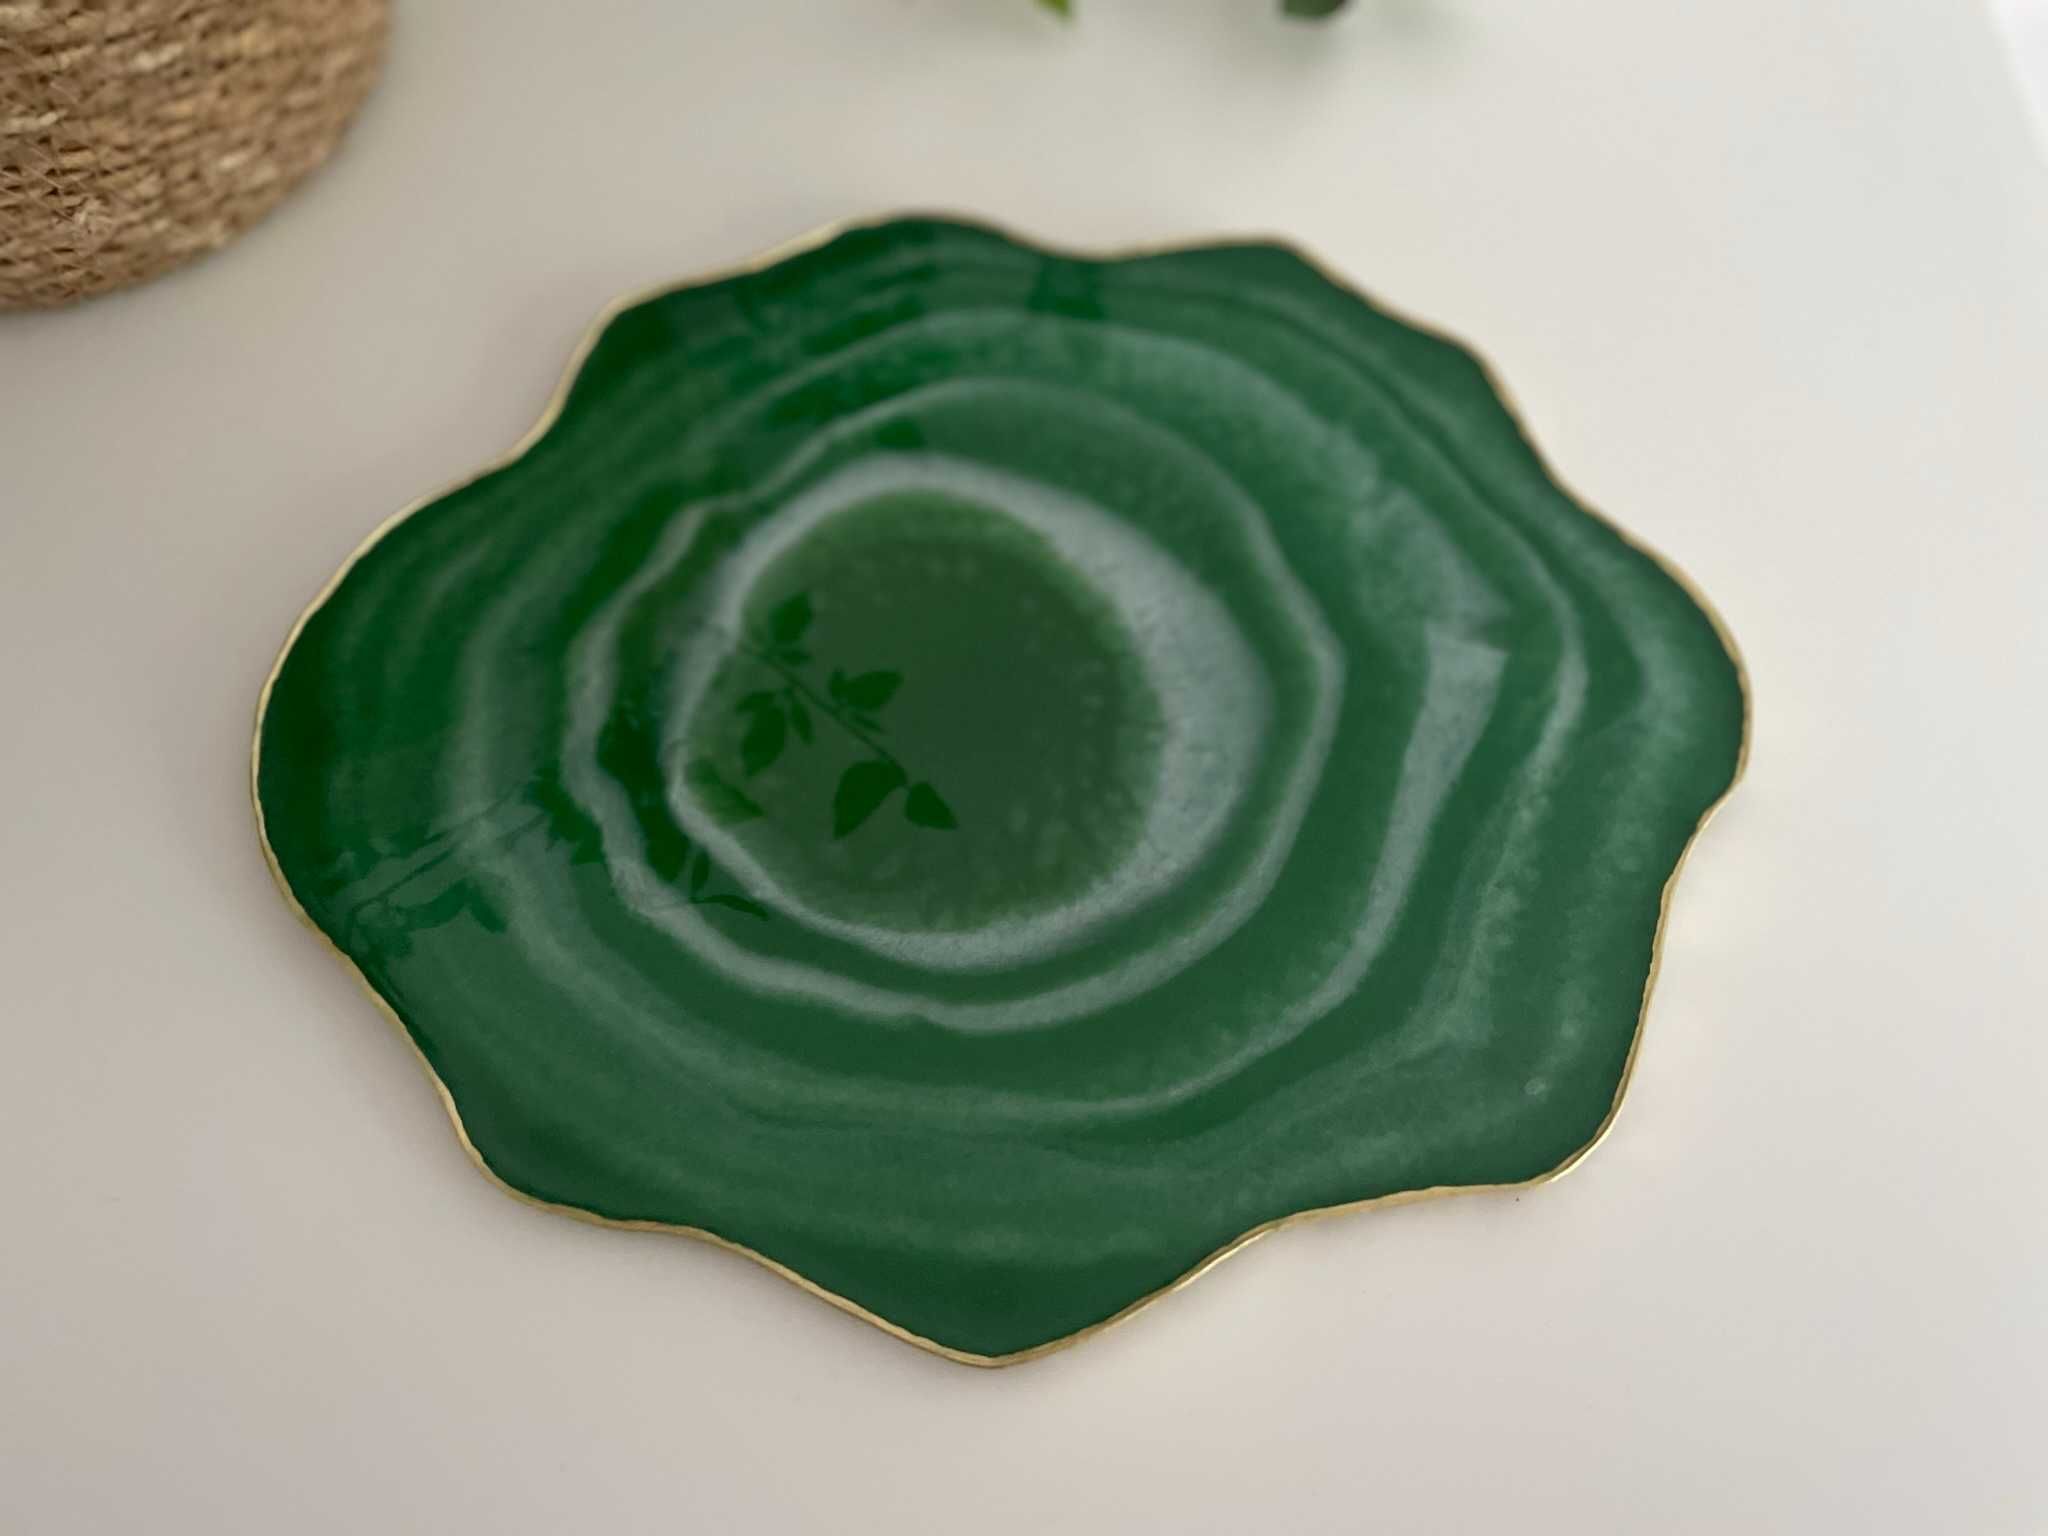 Taca zielona biała agat podkładka dekoracyjna z żywicy epoksydowej